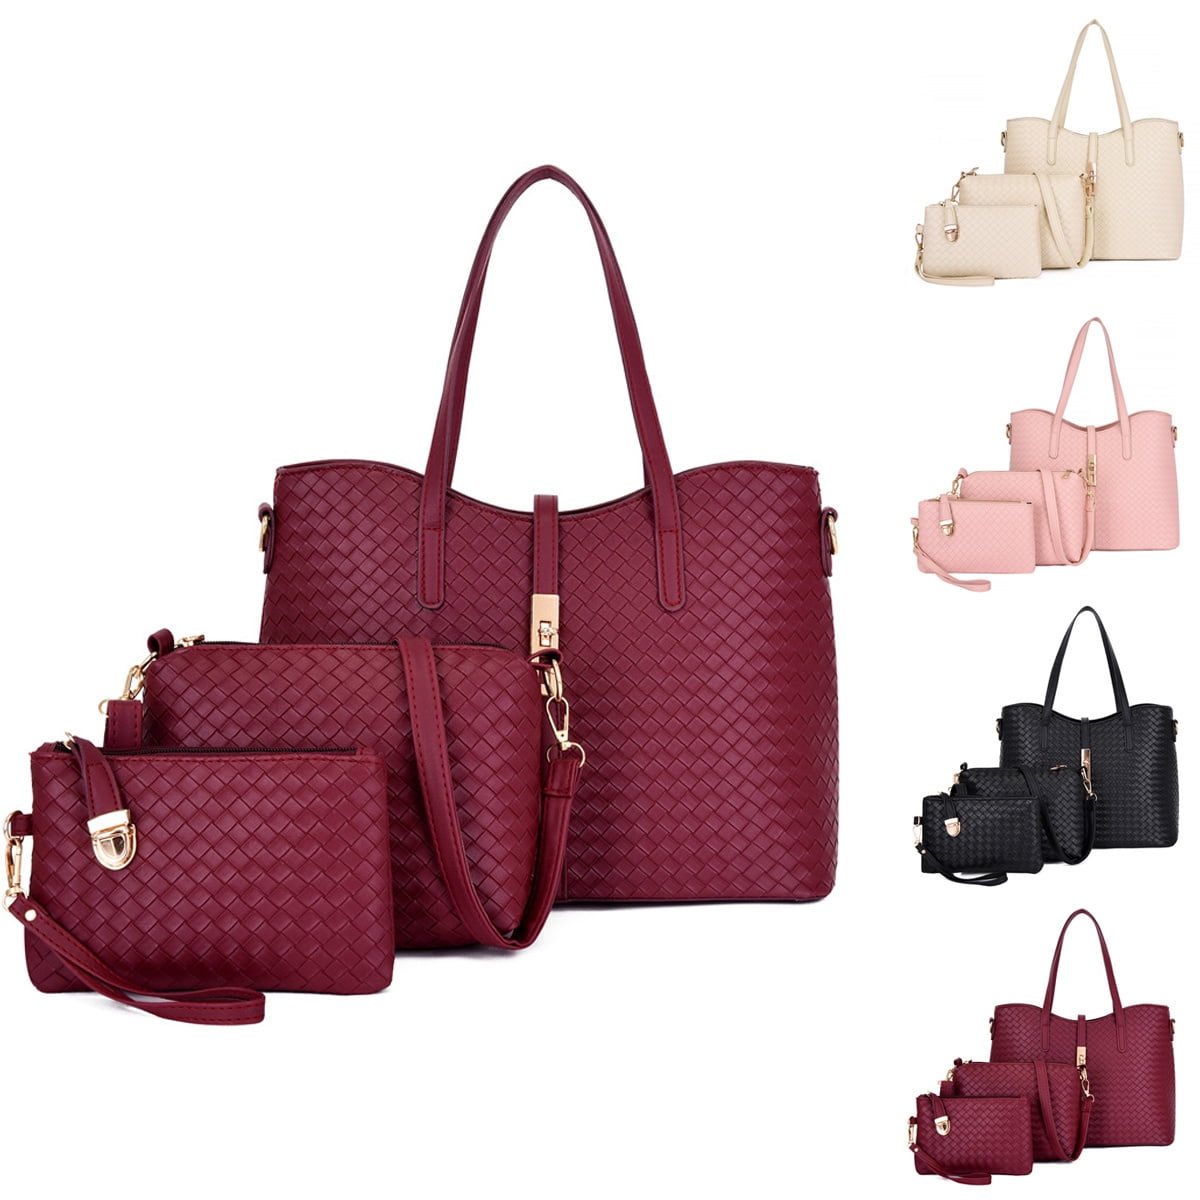 Buy LIKE STYLE Women Beige Handbag BEIGE Online @ Best Price in India |  Flipkart.com